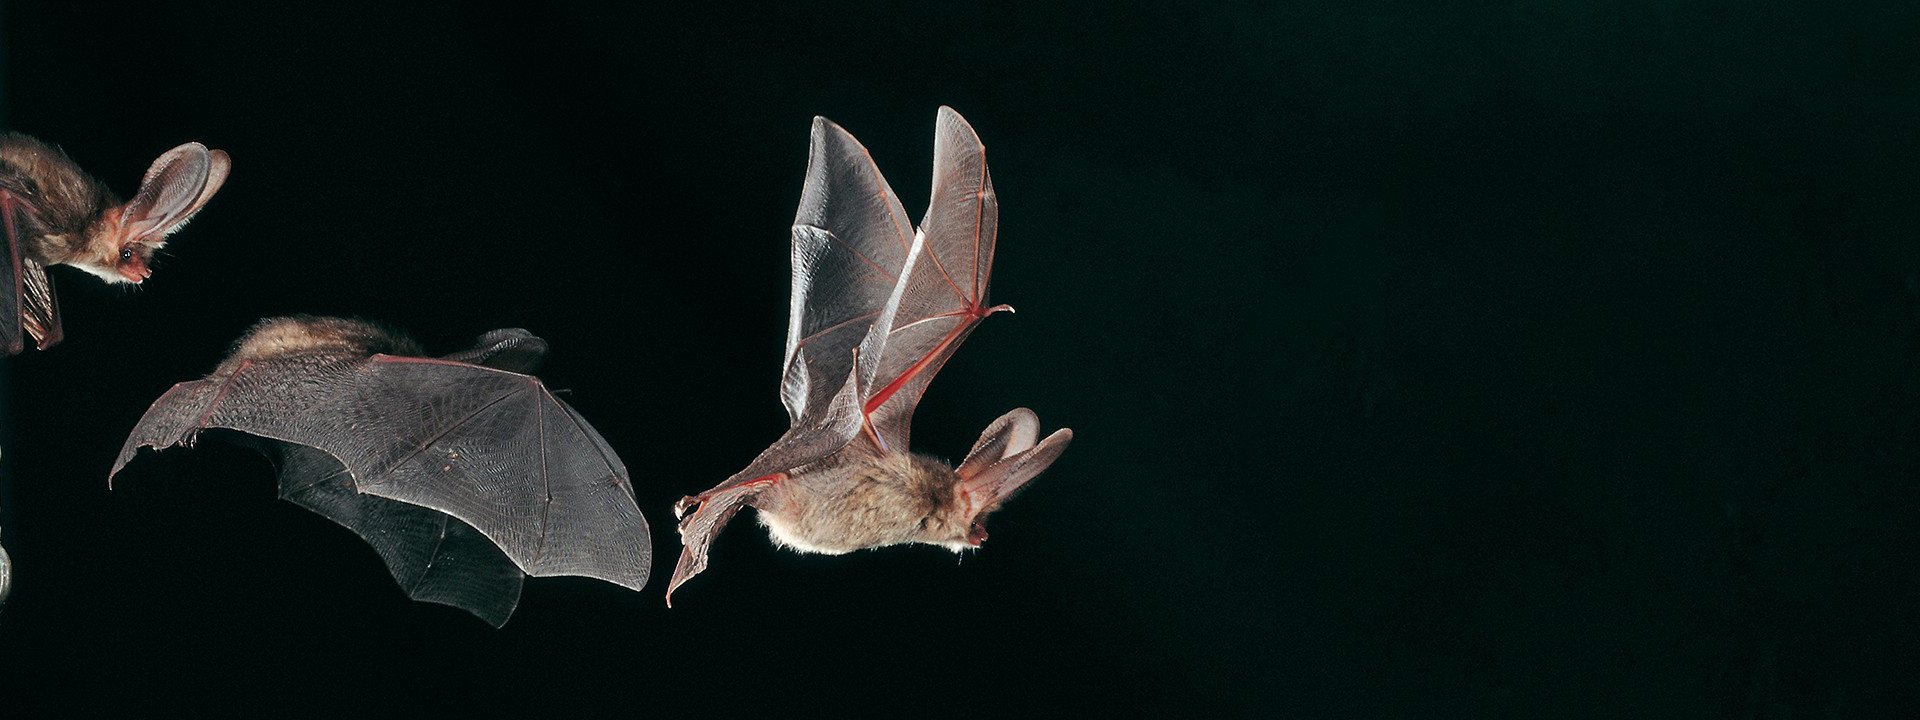 Bats in flight during bat survey